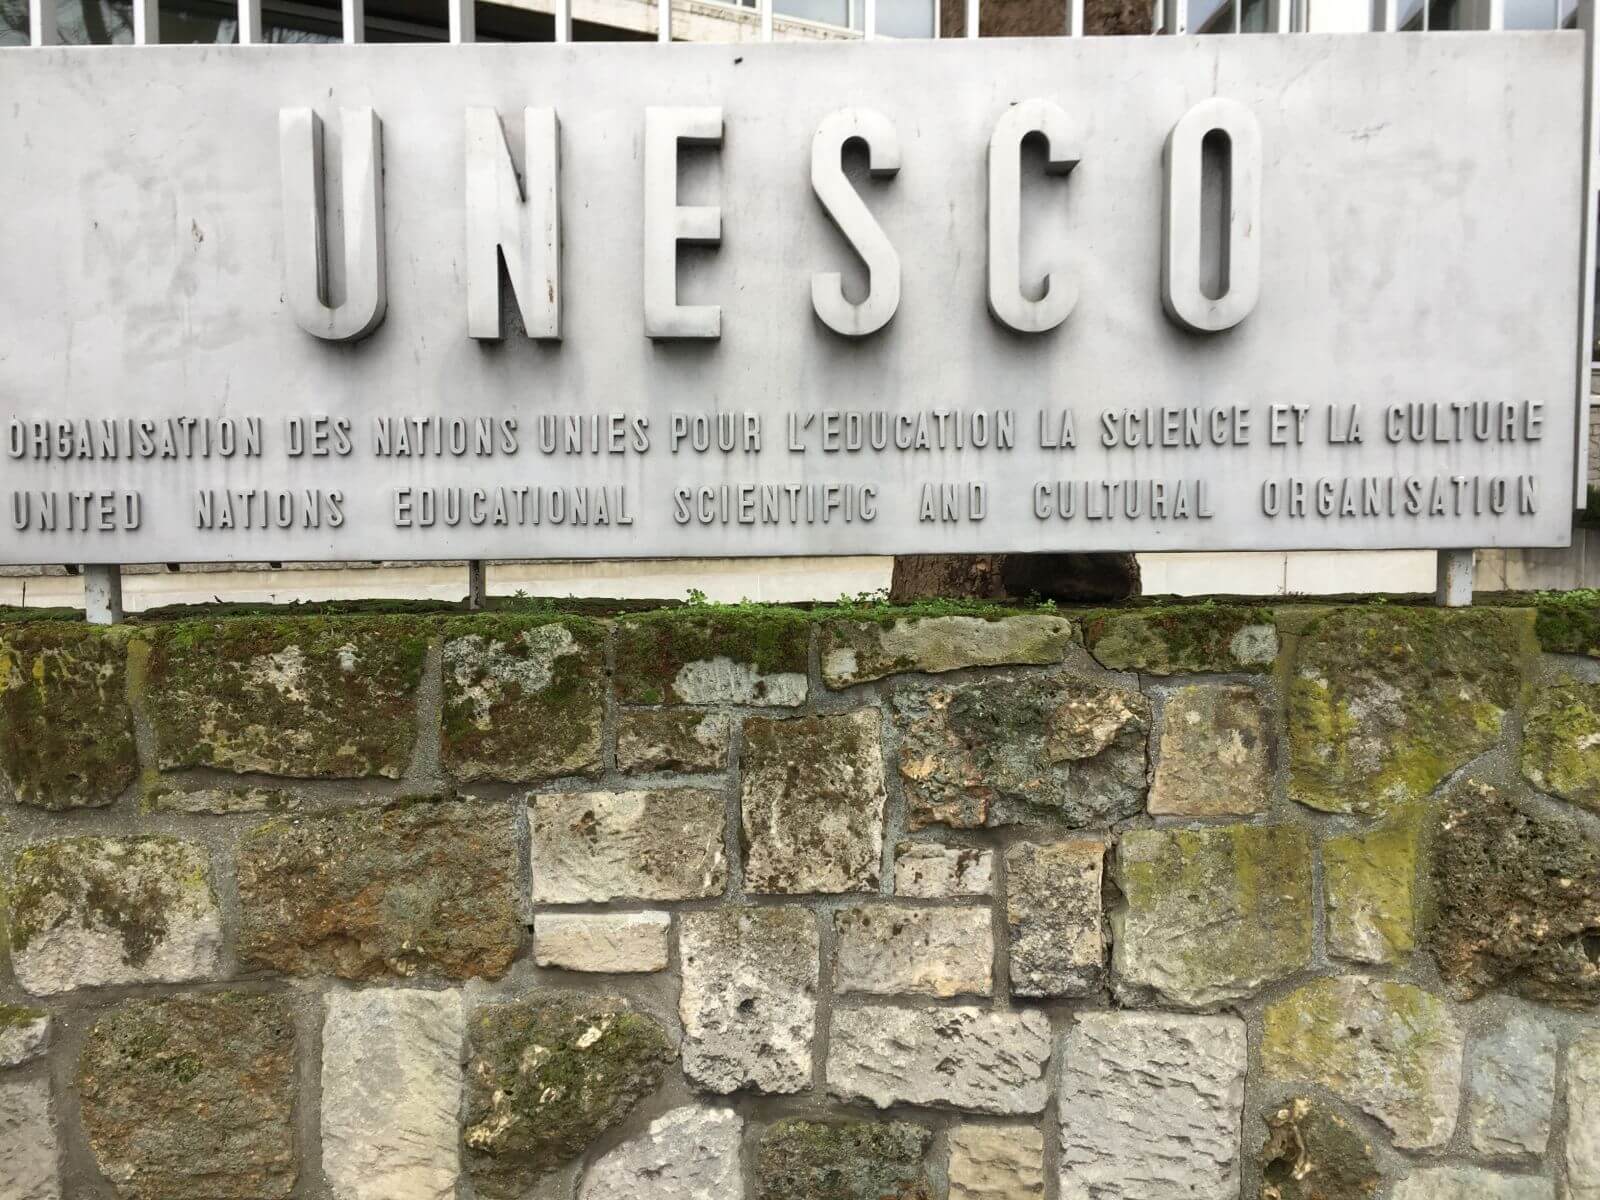 Unesco, Paris